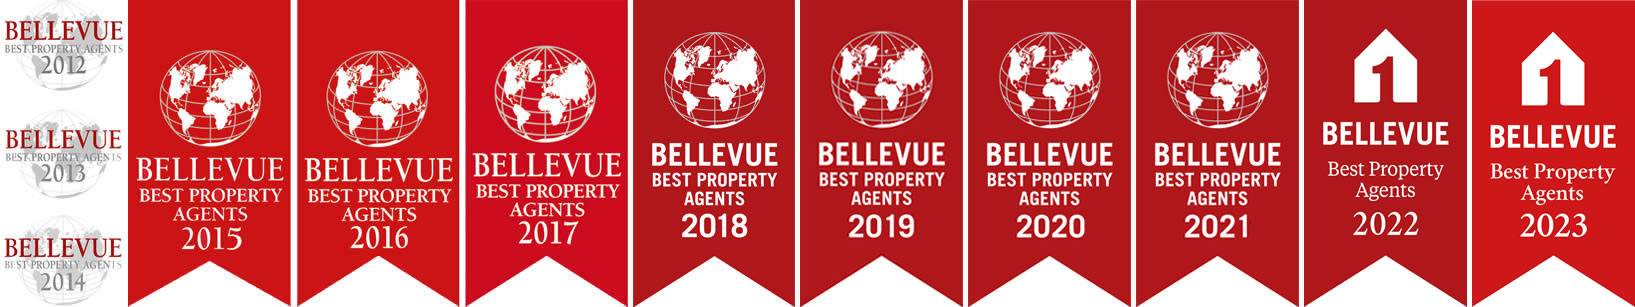 Wimpelartige Bellevue-Auszeichnungs-Logos von 2012 bis 2023